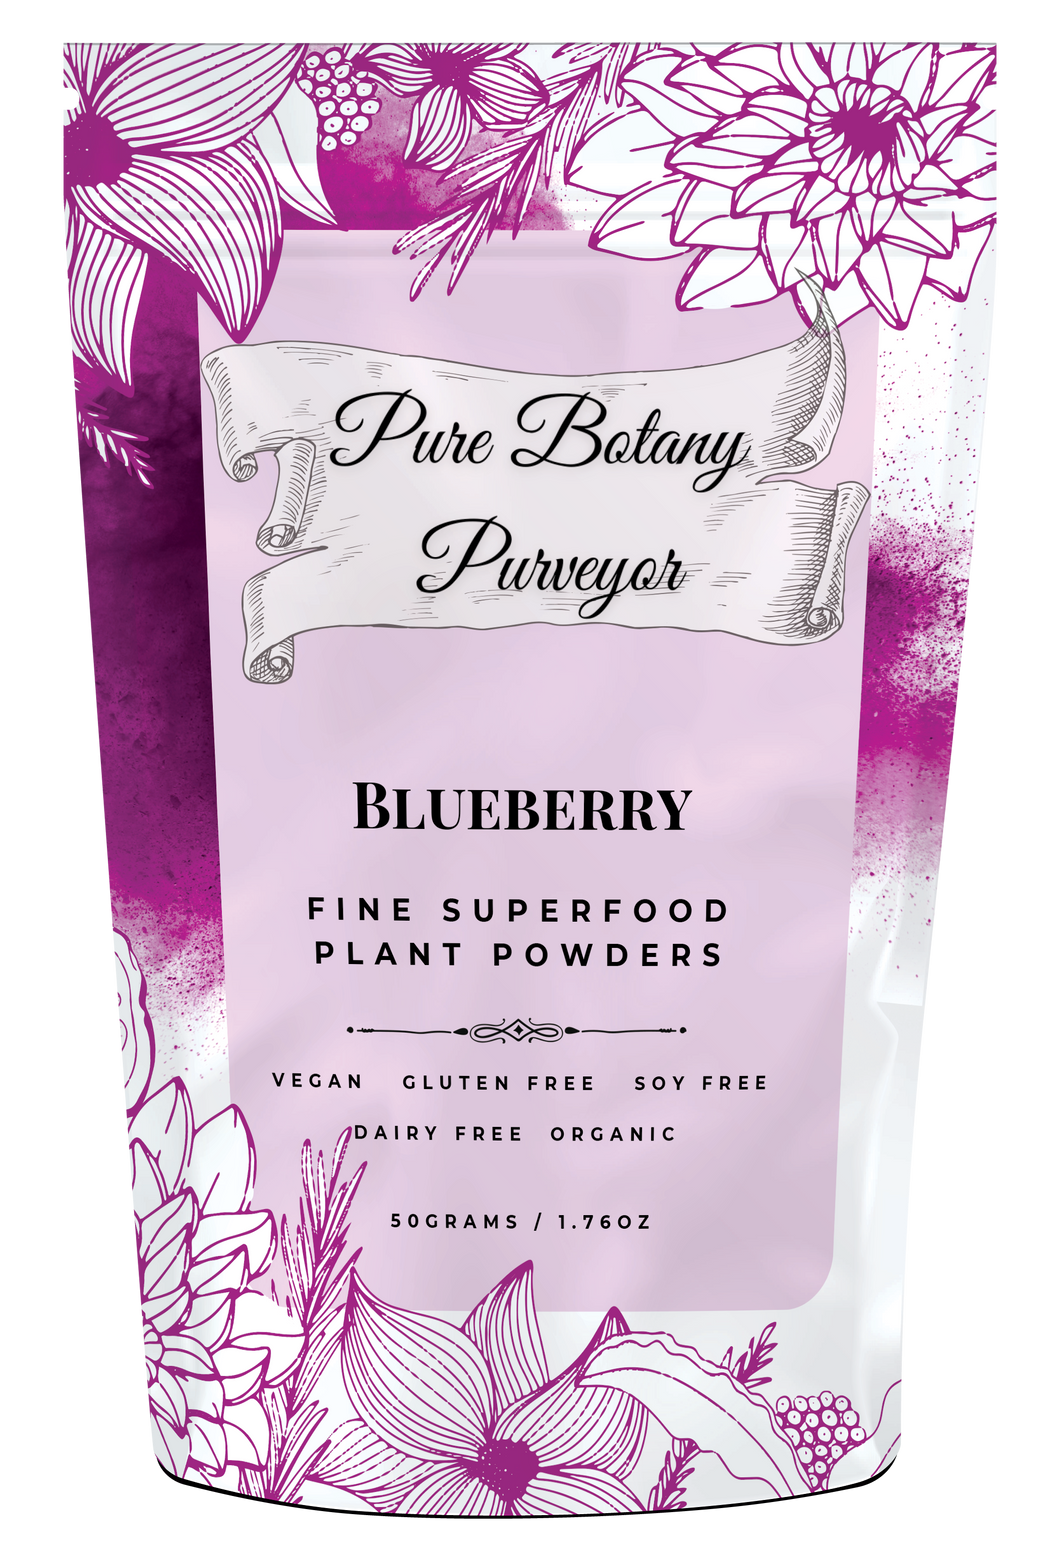 Pure Botany Purveyor Blueberry - 50g - Pure Botanical